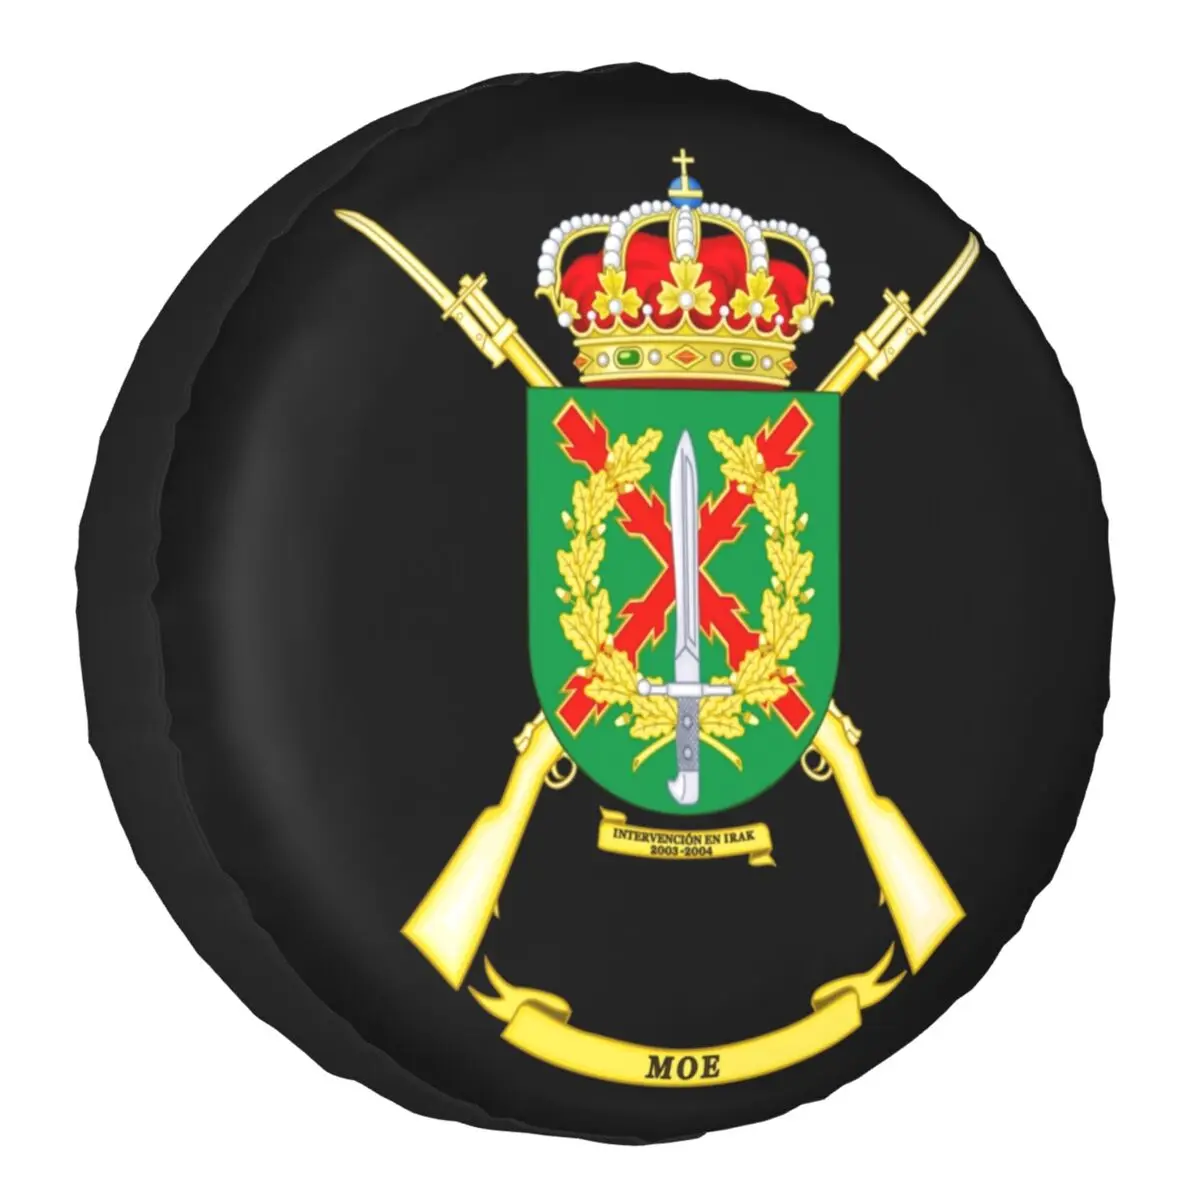 

Чехол для запасных шин испанского легиона, защитное покрытие для автомобильных колес 14 "15" 16 "17", для джипа, внедорожника, прицепа, герба Испании, флаг Испании